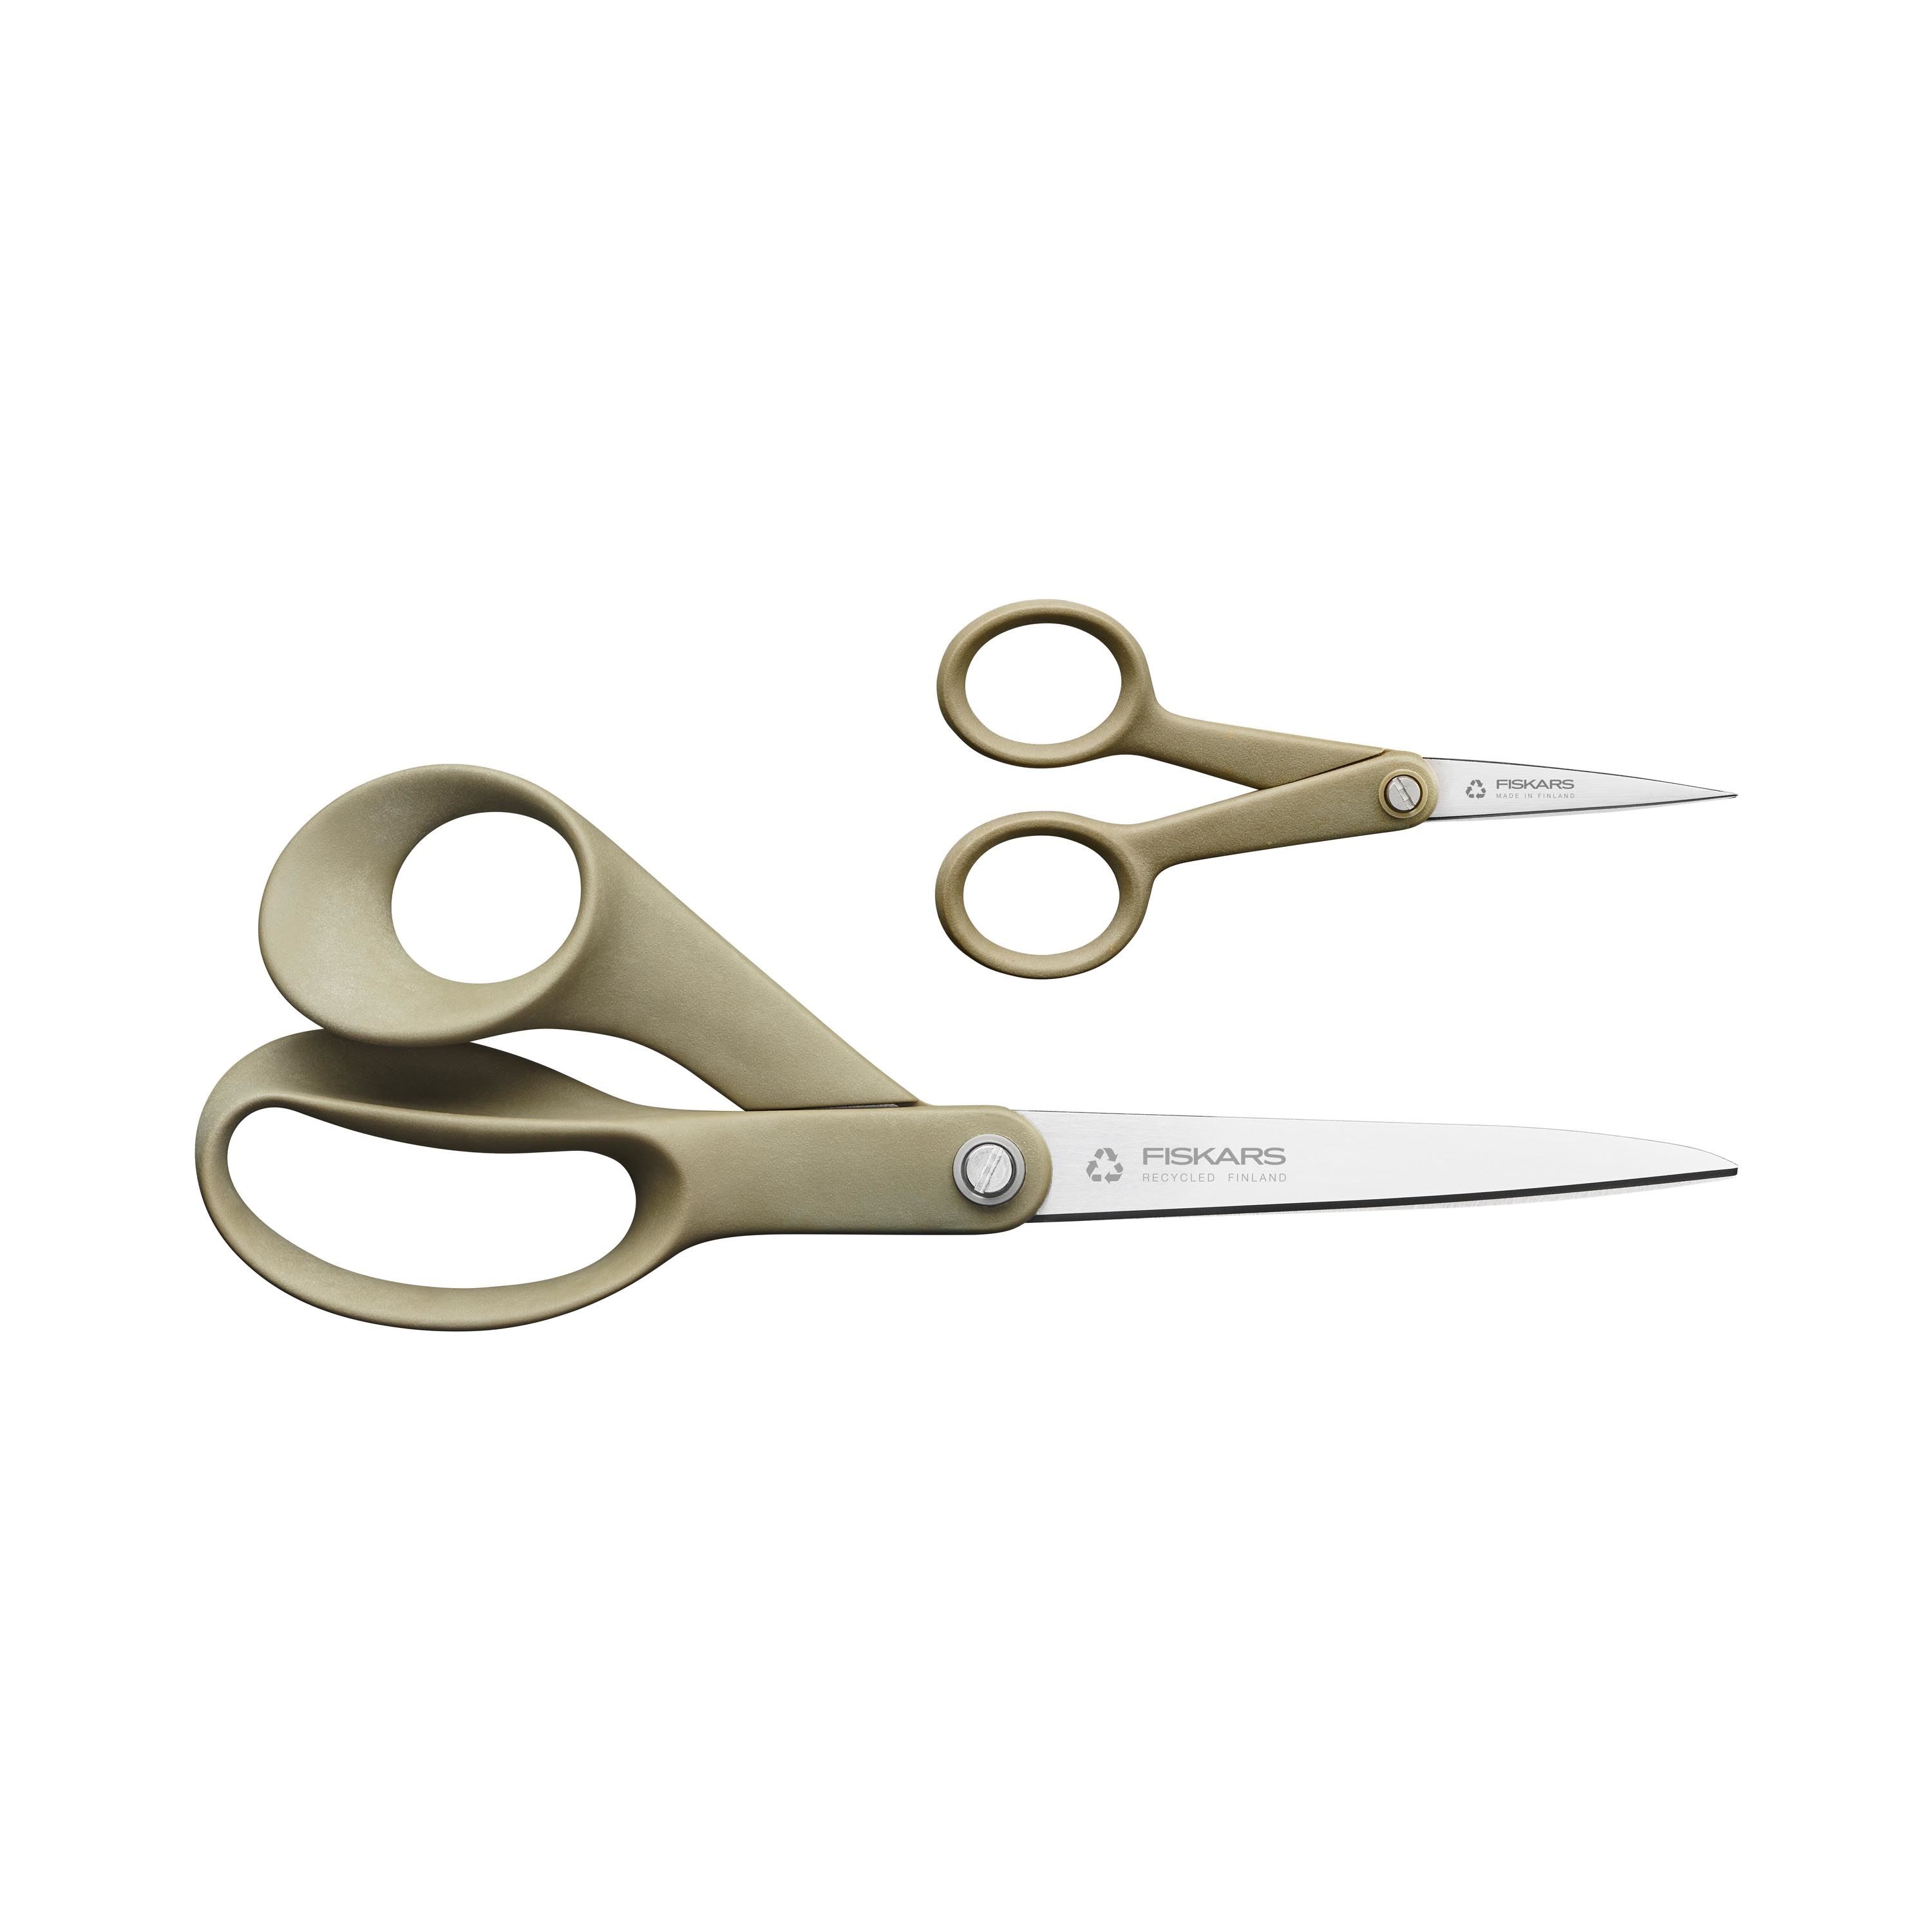 Fiskars Titanium Soft Grip Scissors - Titanium Nitride - Gray - 2